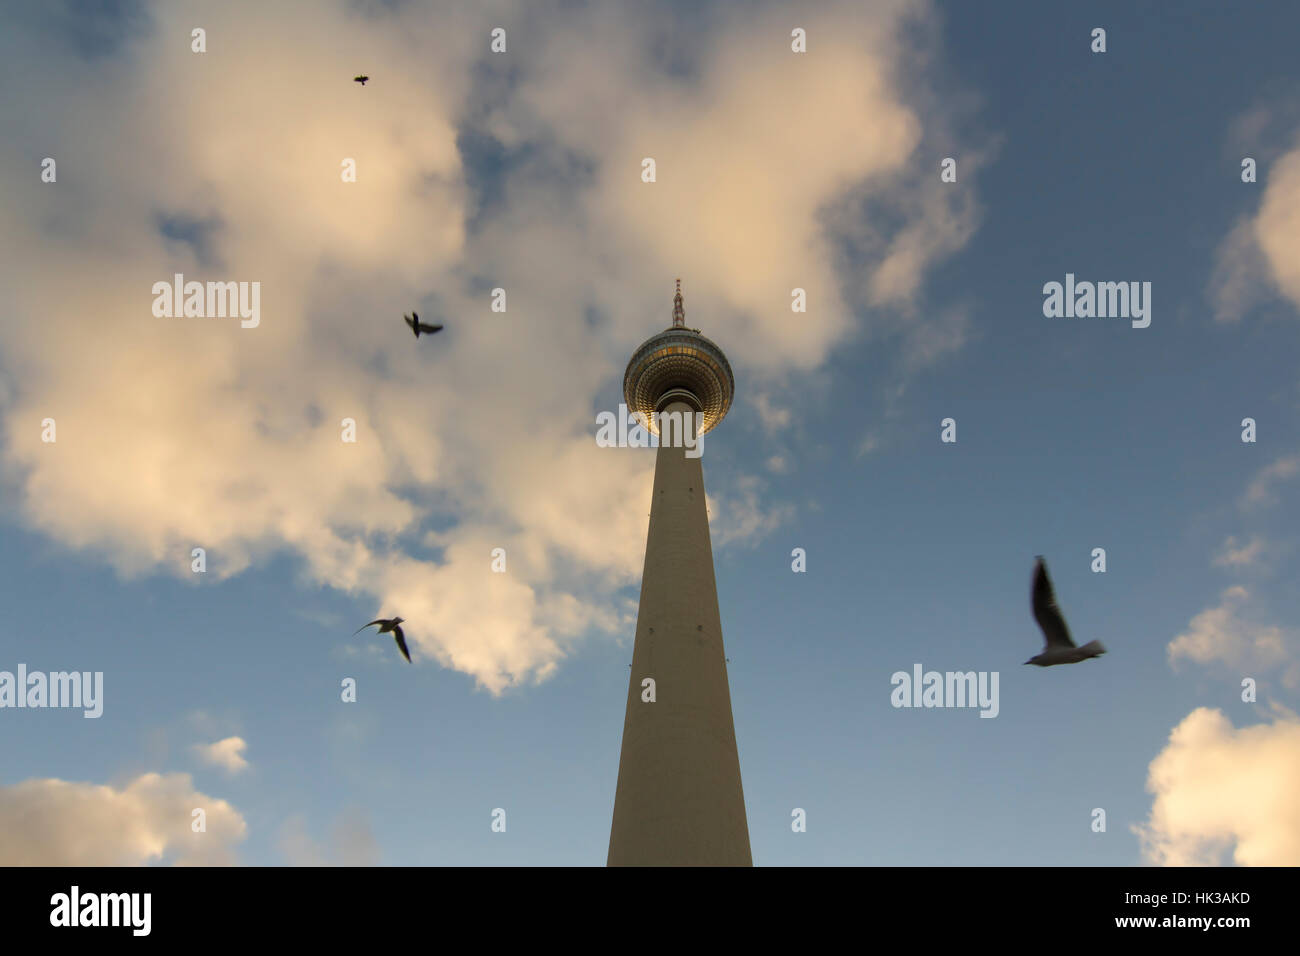 La tour de télévision ou Telecafè avec des oiseaux au coucher du soleil situé sur la place Alexanderplatz à Berlin, Allemagne Banque D'Images